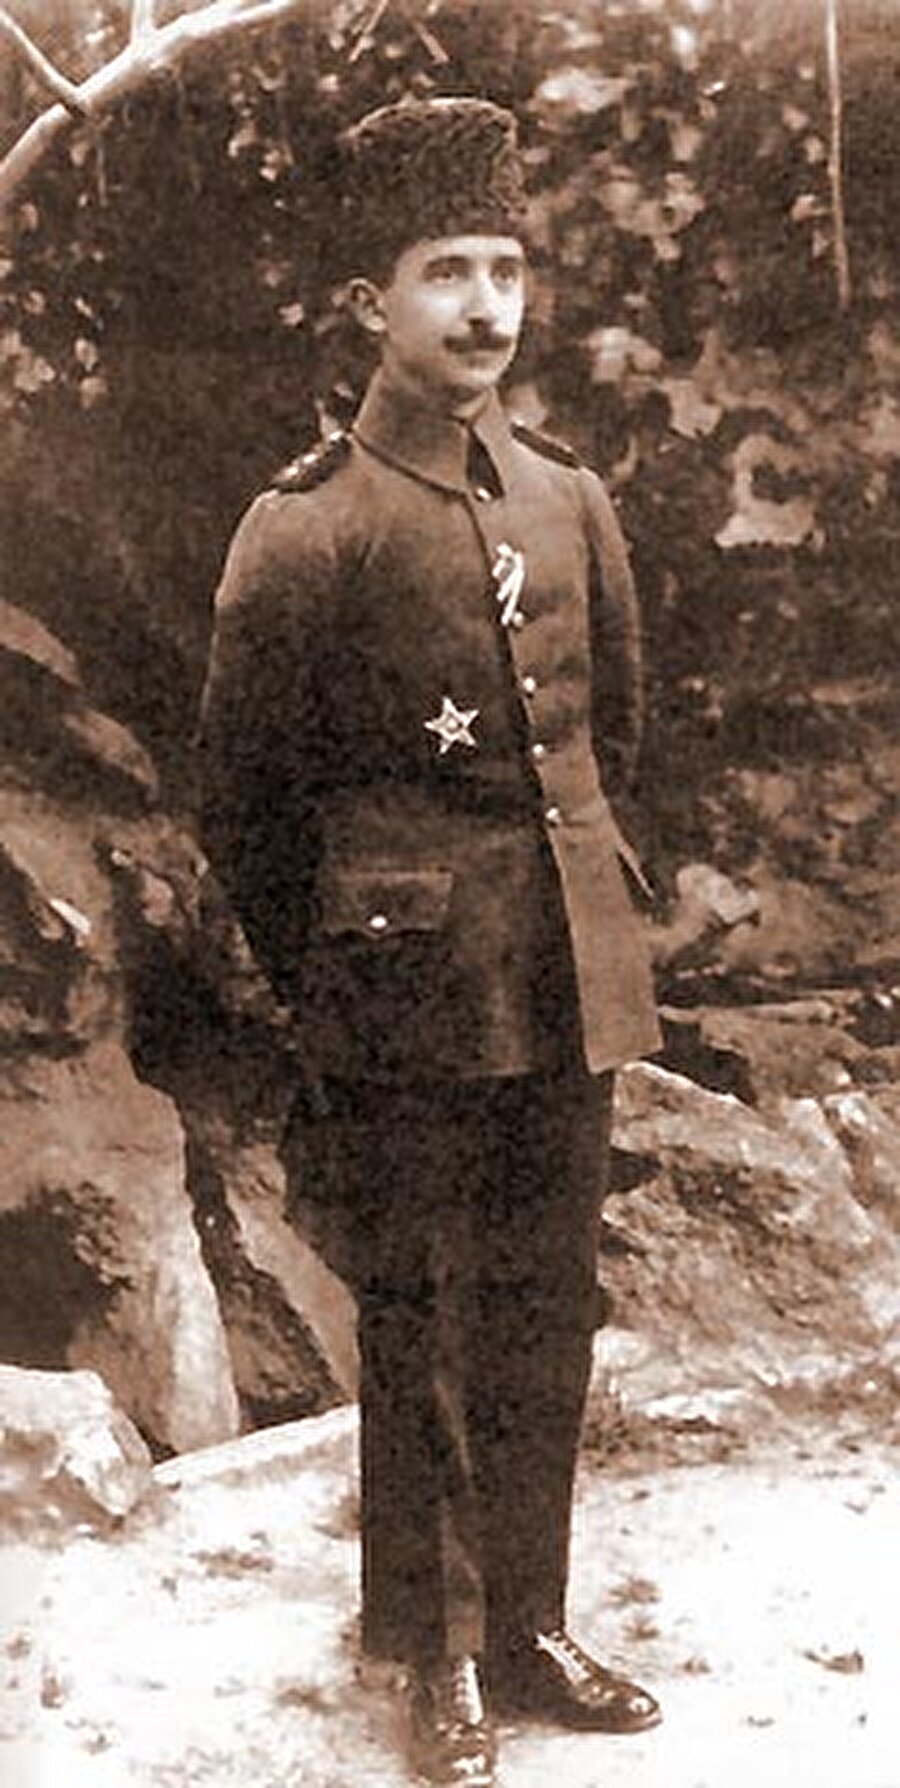 
                                    
                                    
                                    İsmet
İnönü, Türkiye Cumhuriyetinin ilk başbakanı ve ikinci cumhurbaşkanıdır.
                                
                                
                                